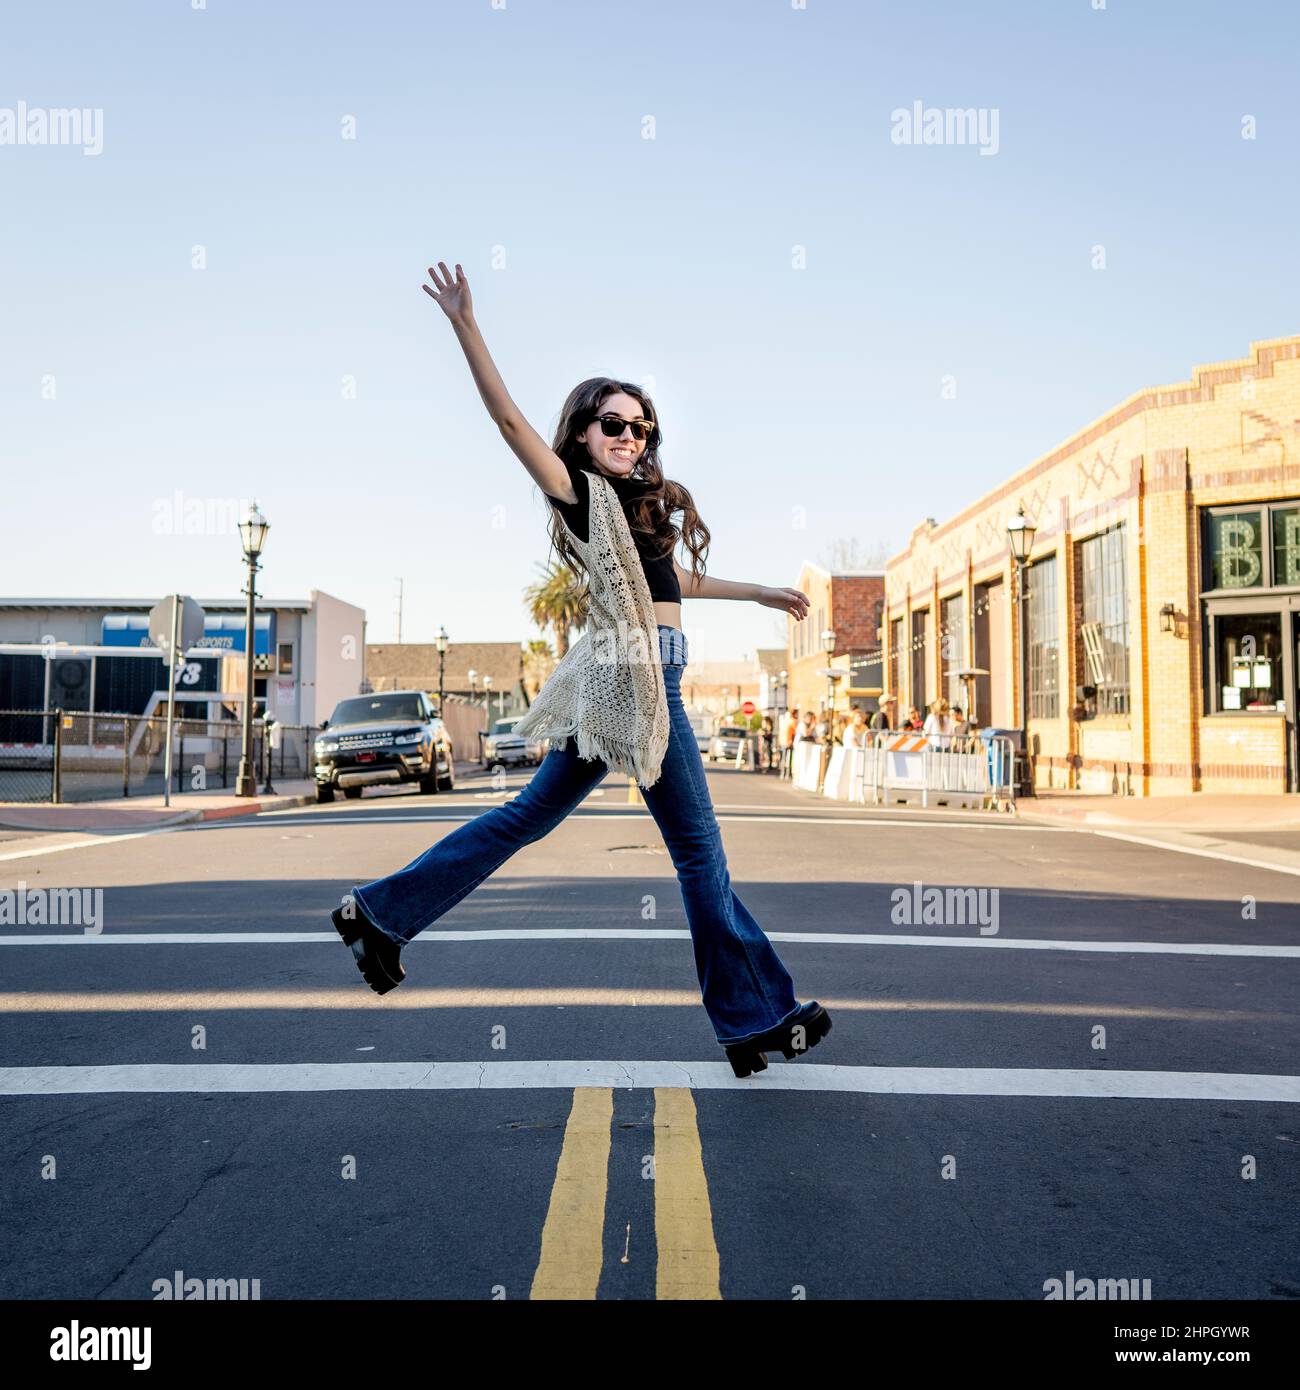 Junge Frau im Retro-Outfit von 70s überquert eine Straße in der Innenstadt Stockfoto